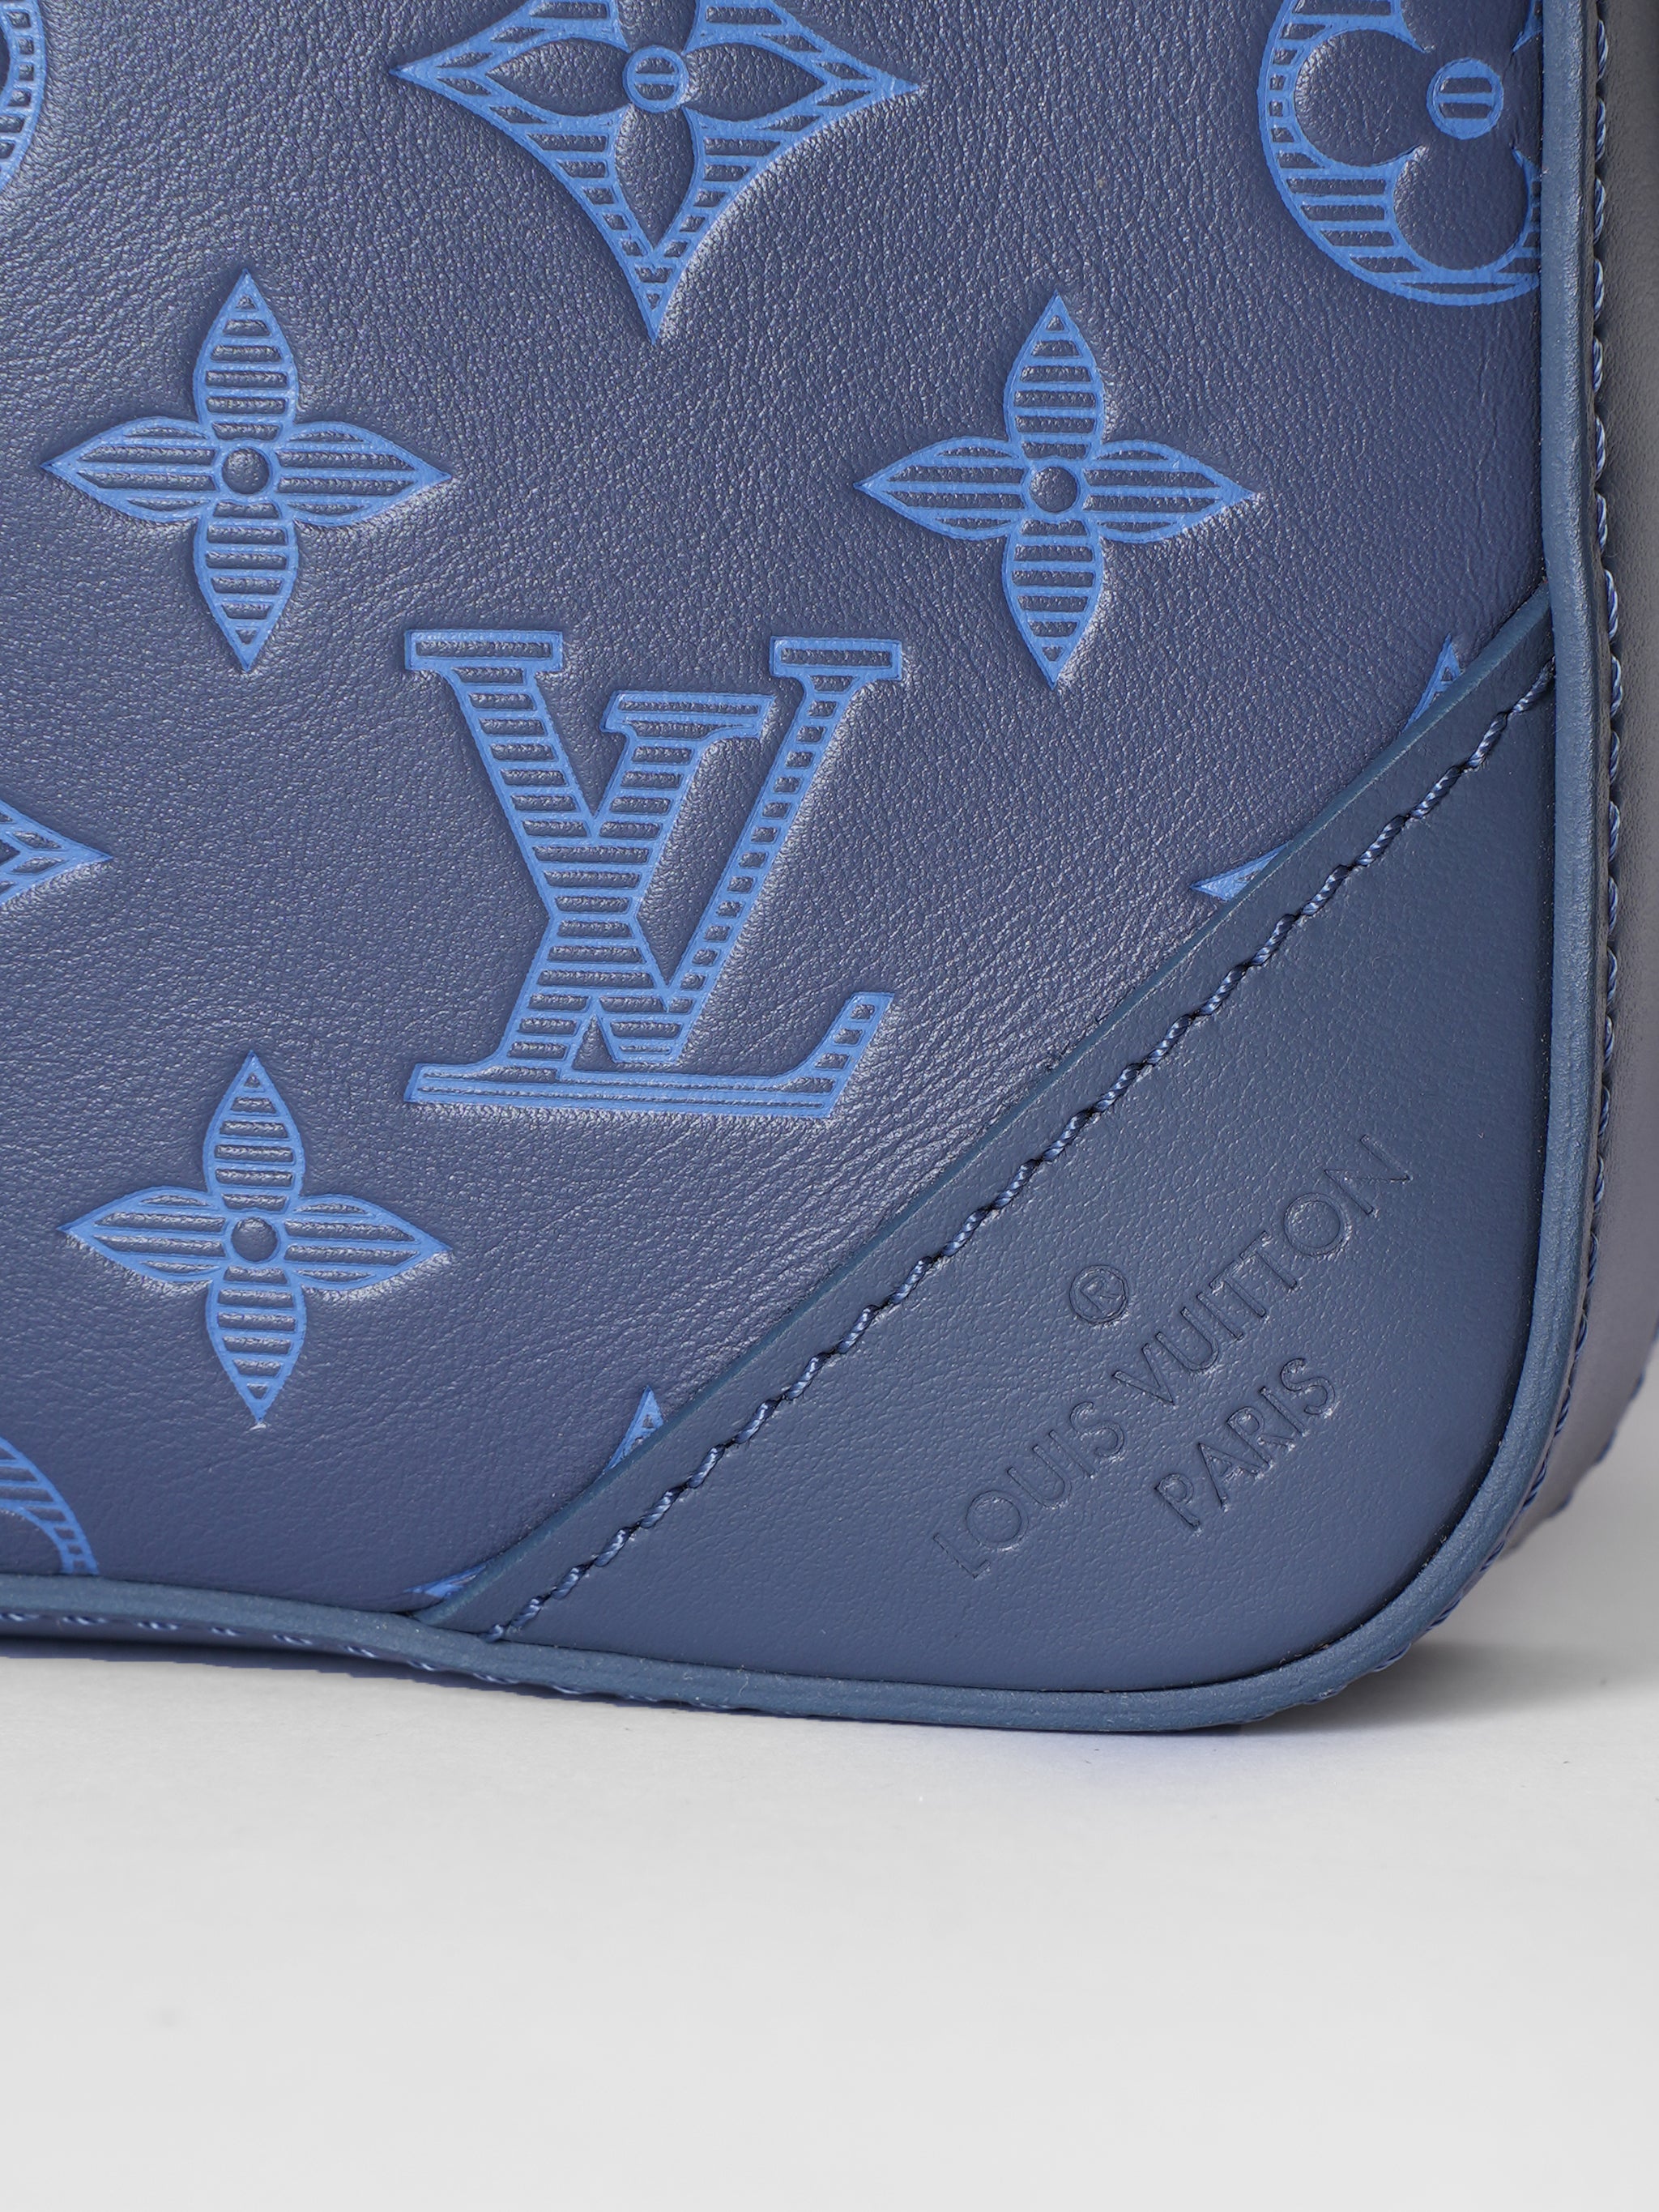 New Louis Vuitton Messanger Bag